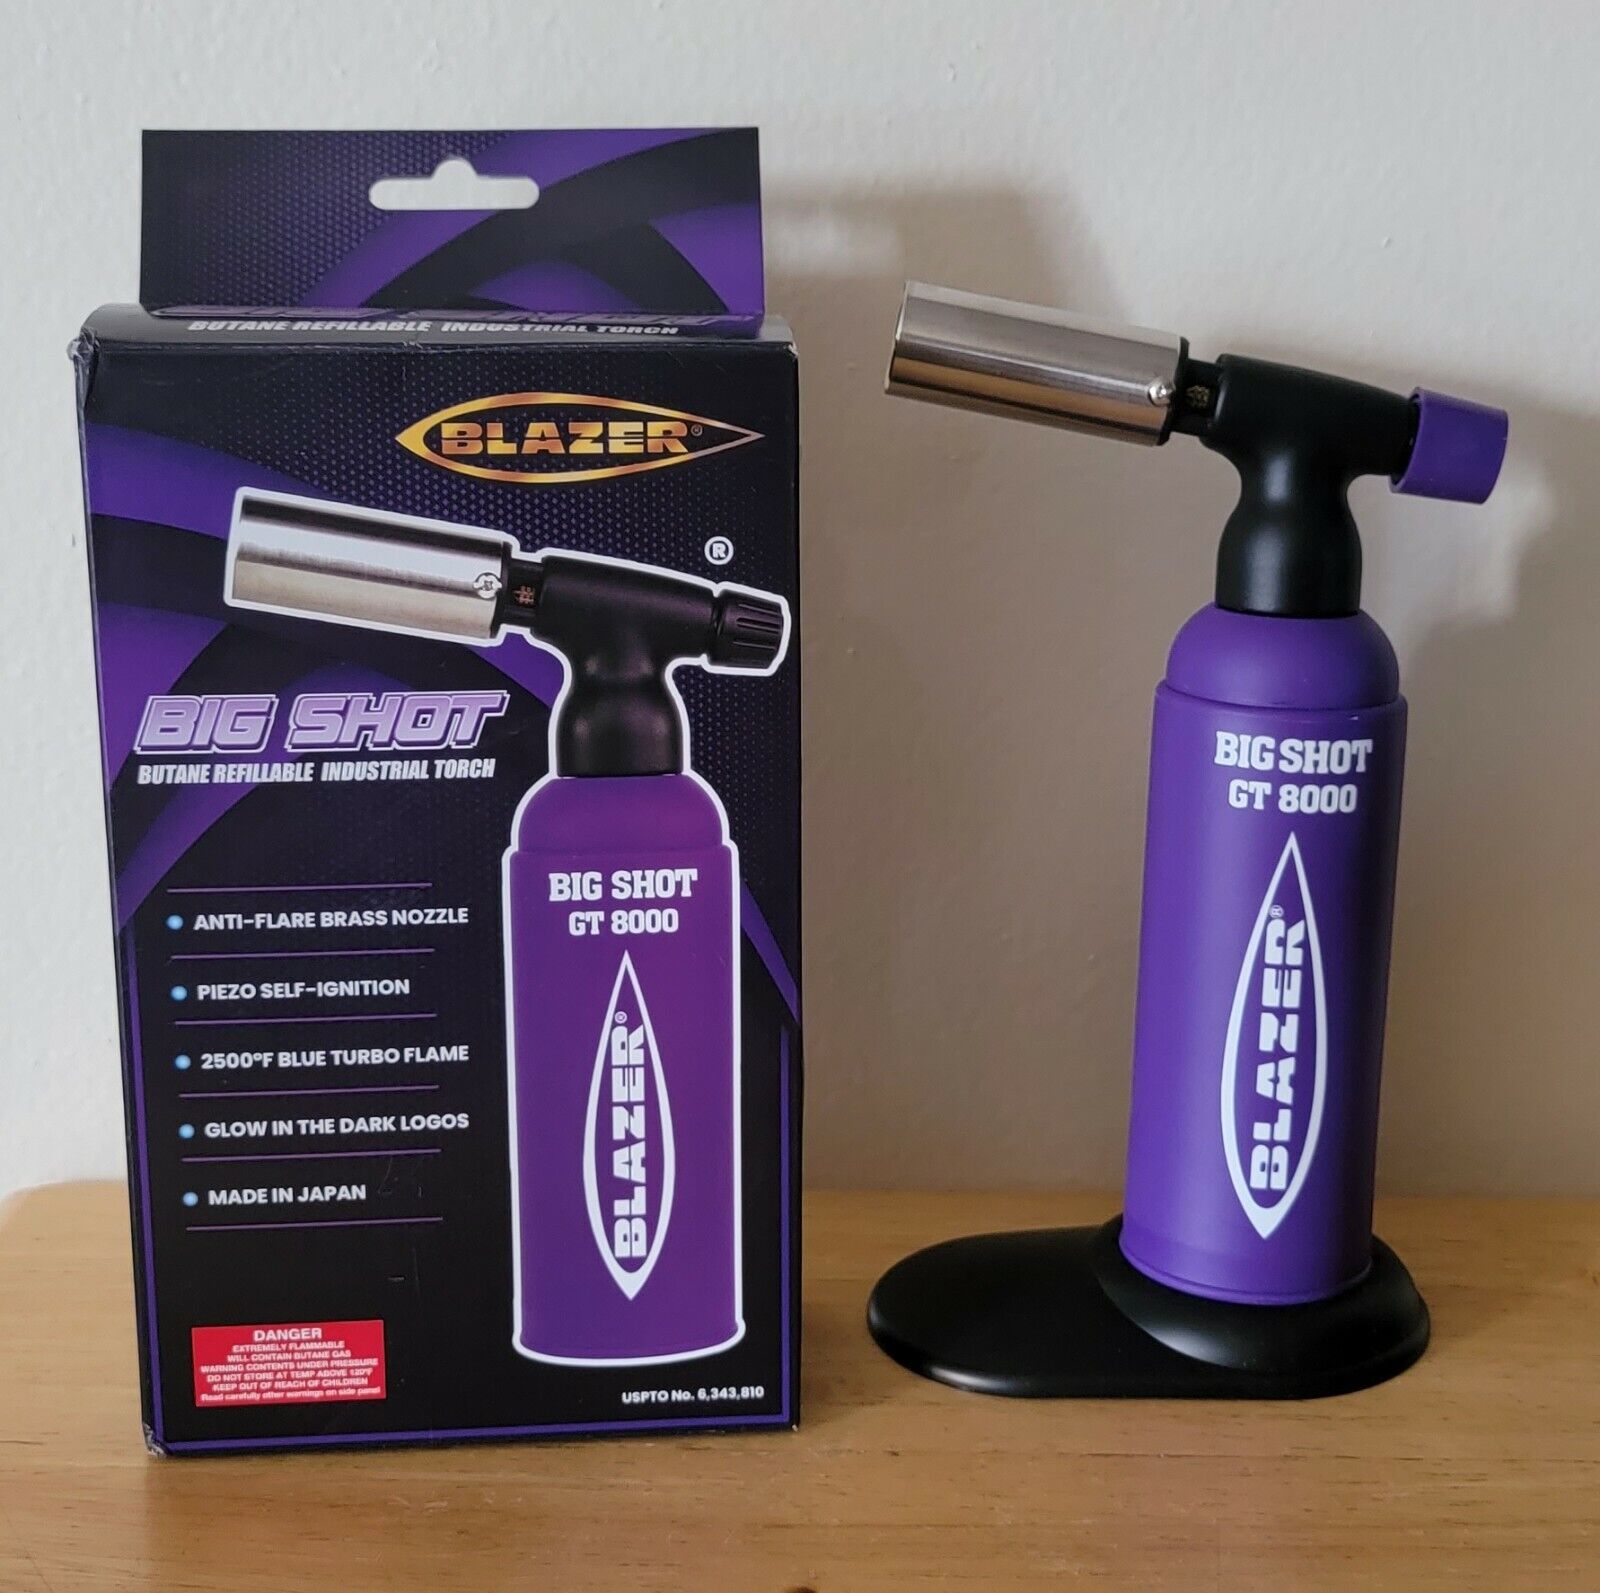 Blazer Big Shot Torch GT8000 Limited Edition Purple with Glow in Dark Logo